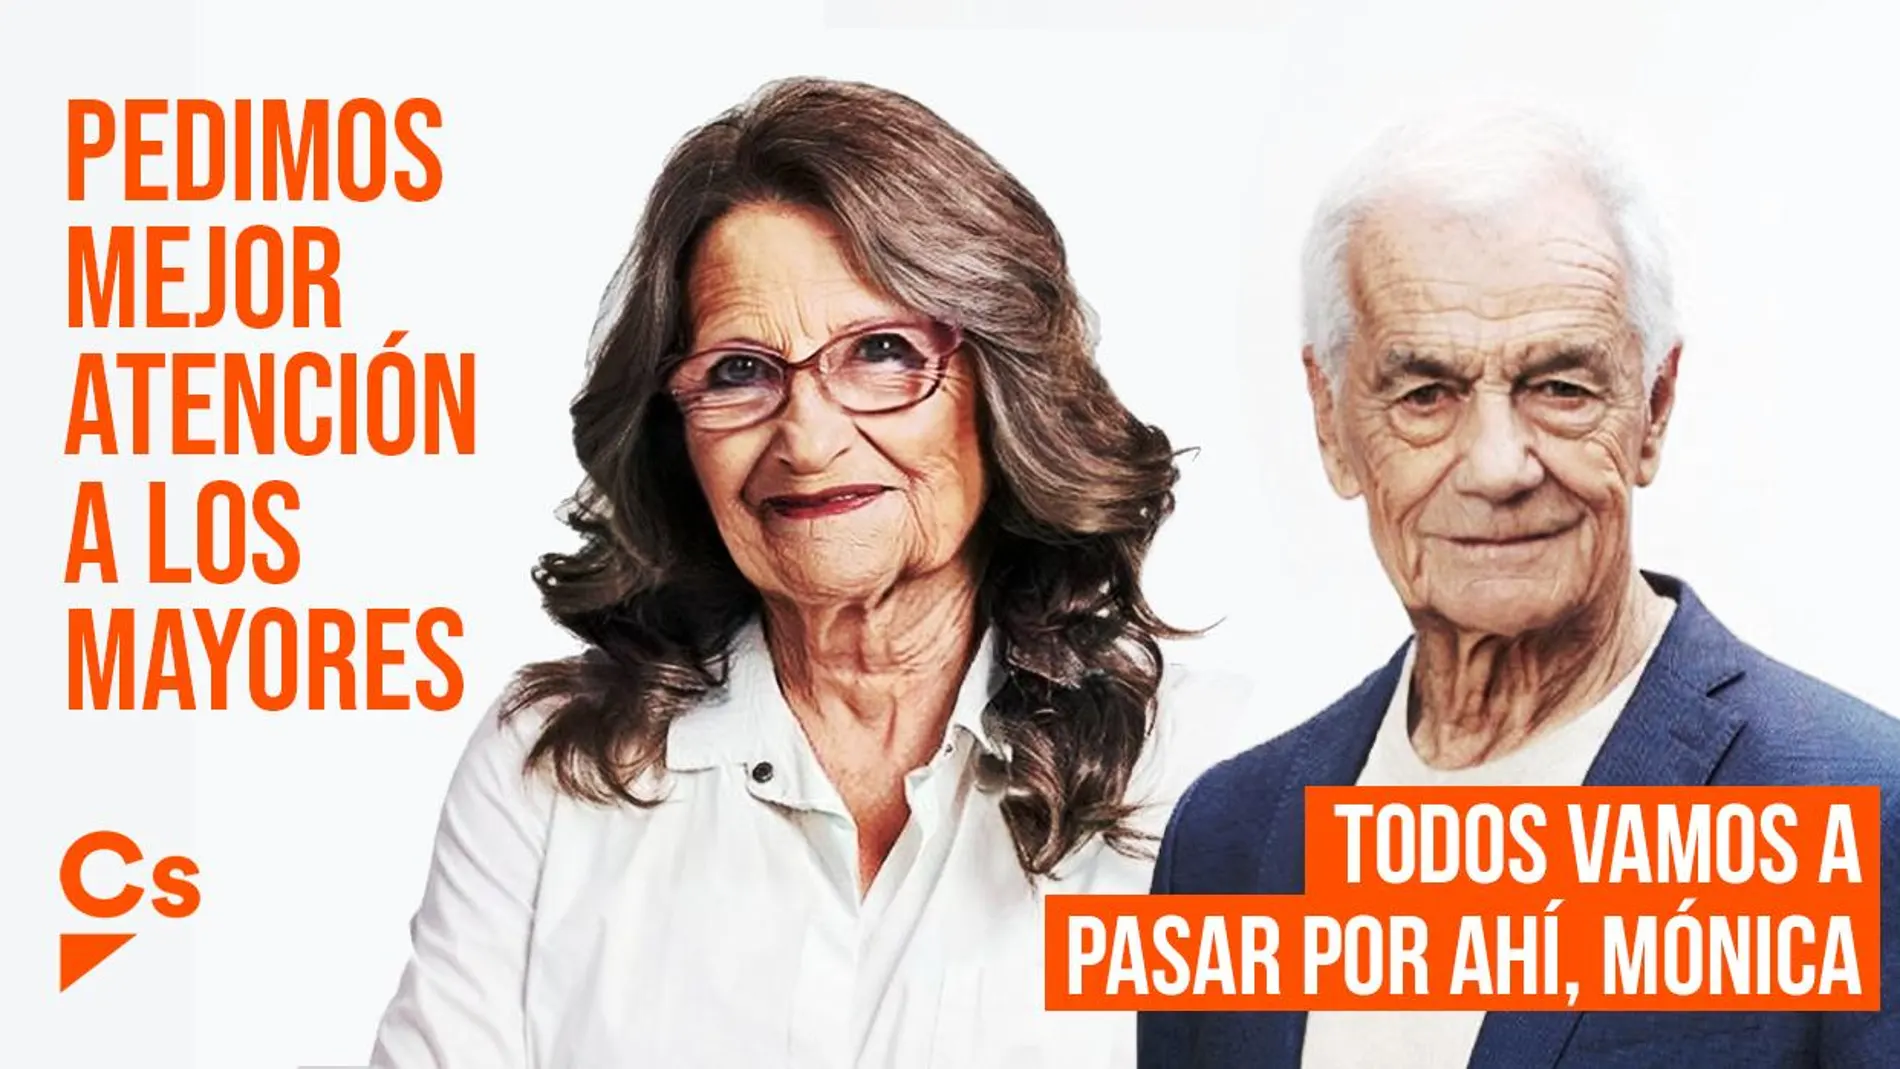 Ciudadanos ha puesto en marcha una campaña donde se ve a Mónica Oltra y a Toni Cantó envejecidos